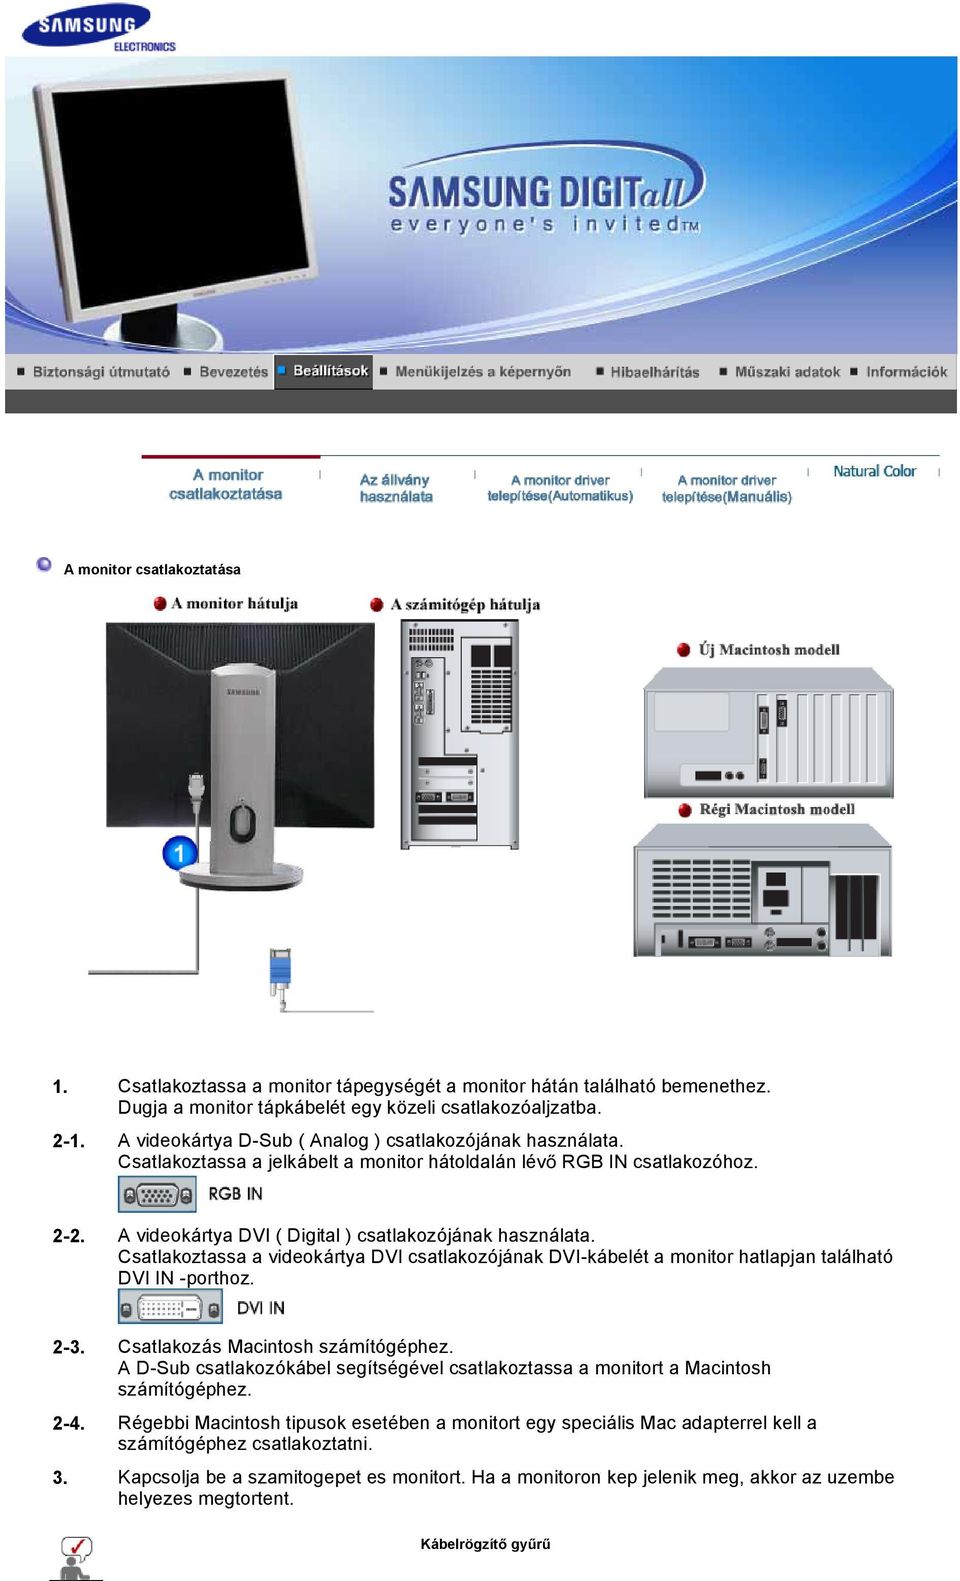 Csatlakoztassa a videokártya DVI csatlakozójának DVI-kábelét a monitor hatlapjan található DVI IN -porthoz. 2-3. Csatlakozás Macintosh számítógéphez.